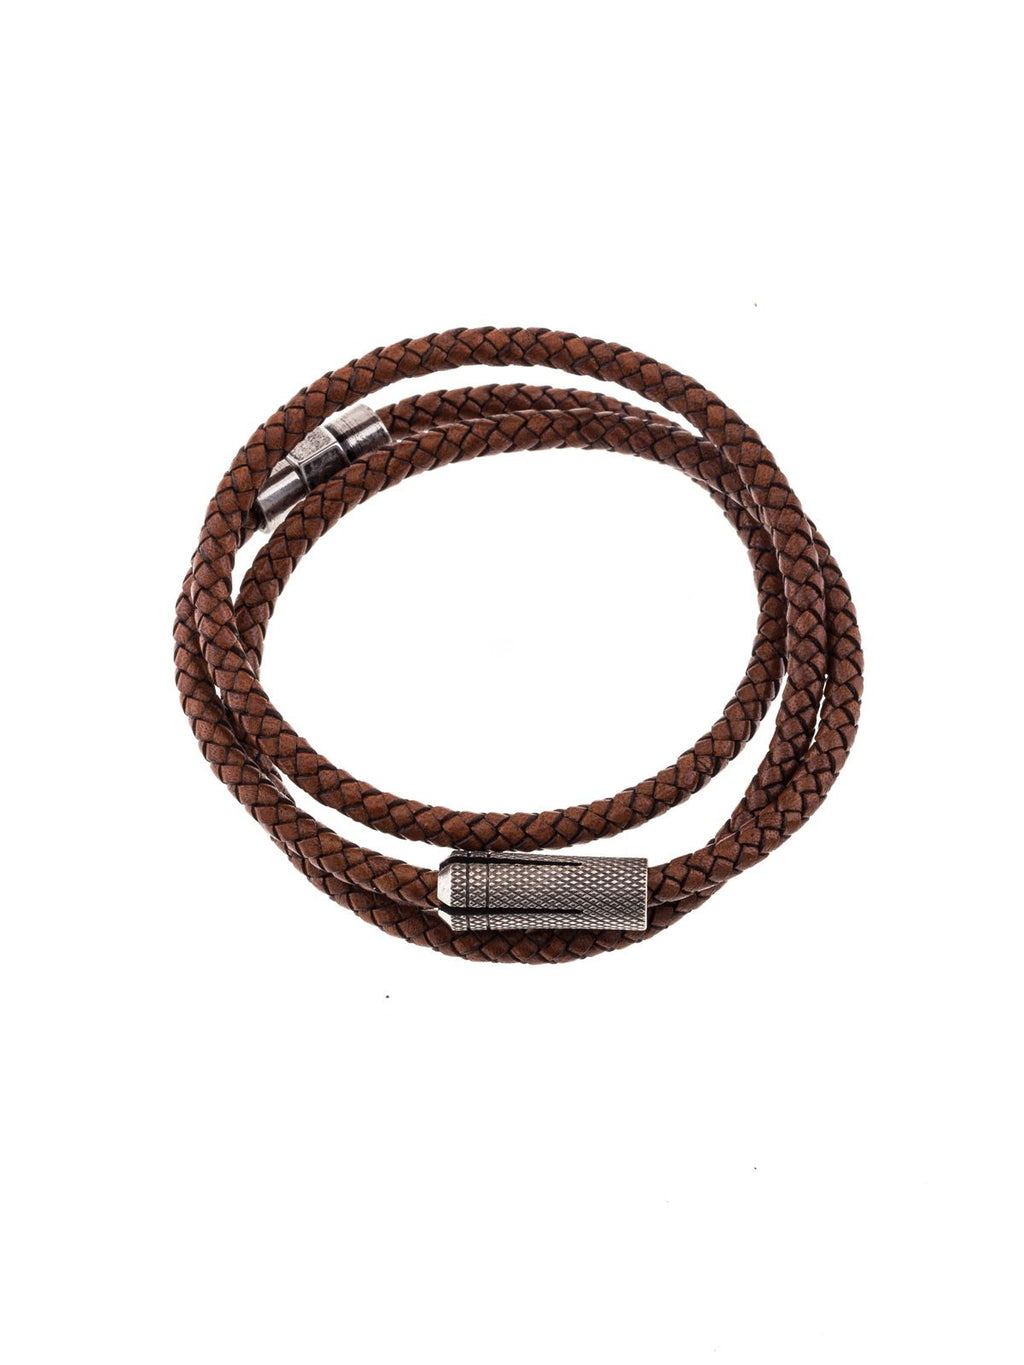 Triple leather bracelet for men